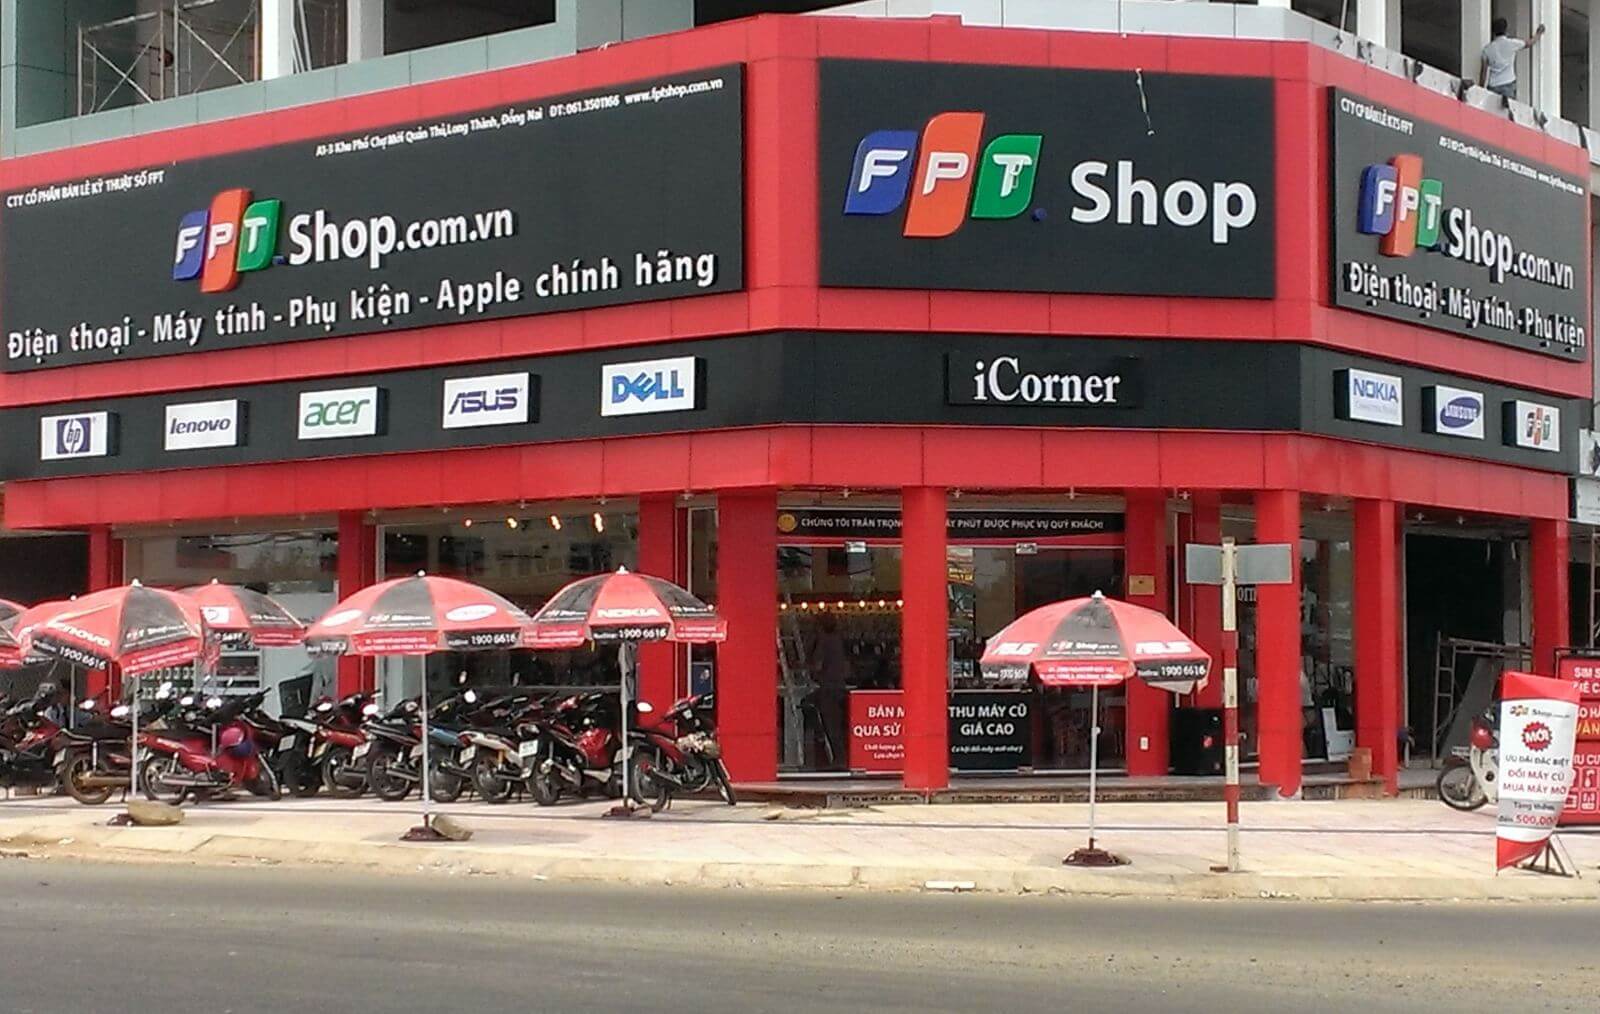 Fpt Shop cung cấp dịch vụ sim thẻ Vinaphone